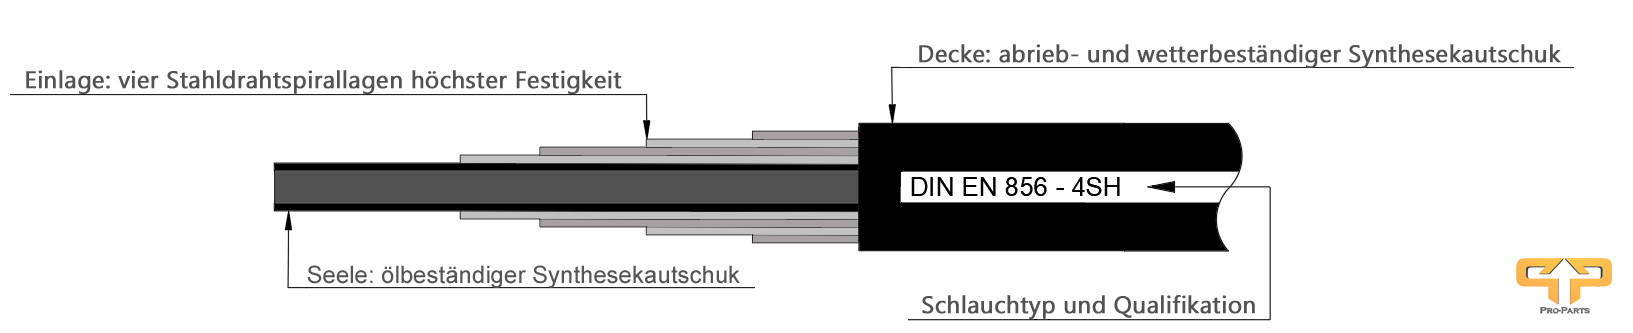 Darstellung einer 4SH Hydraulikschlauchs